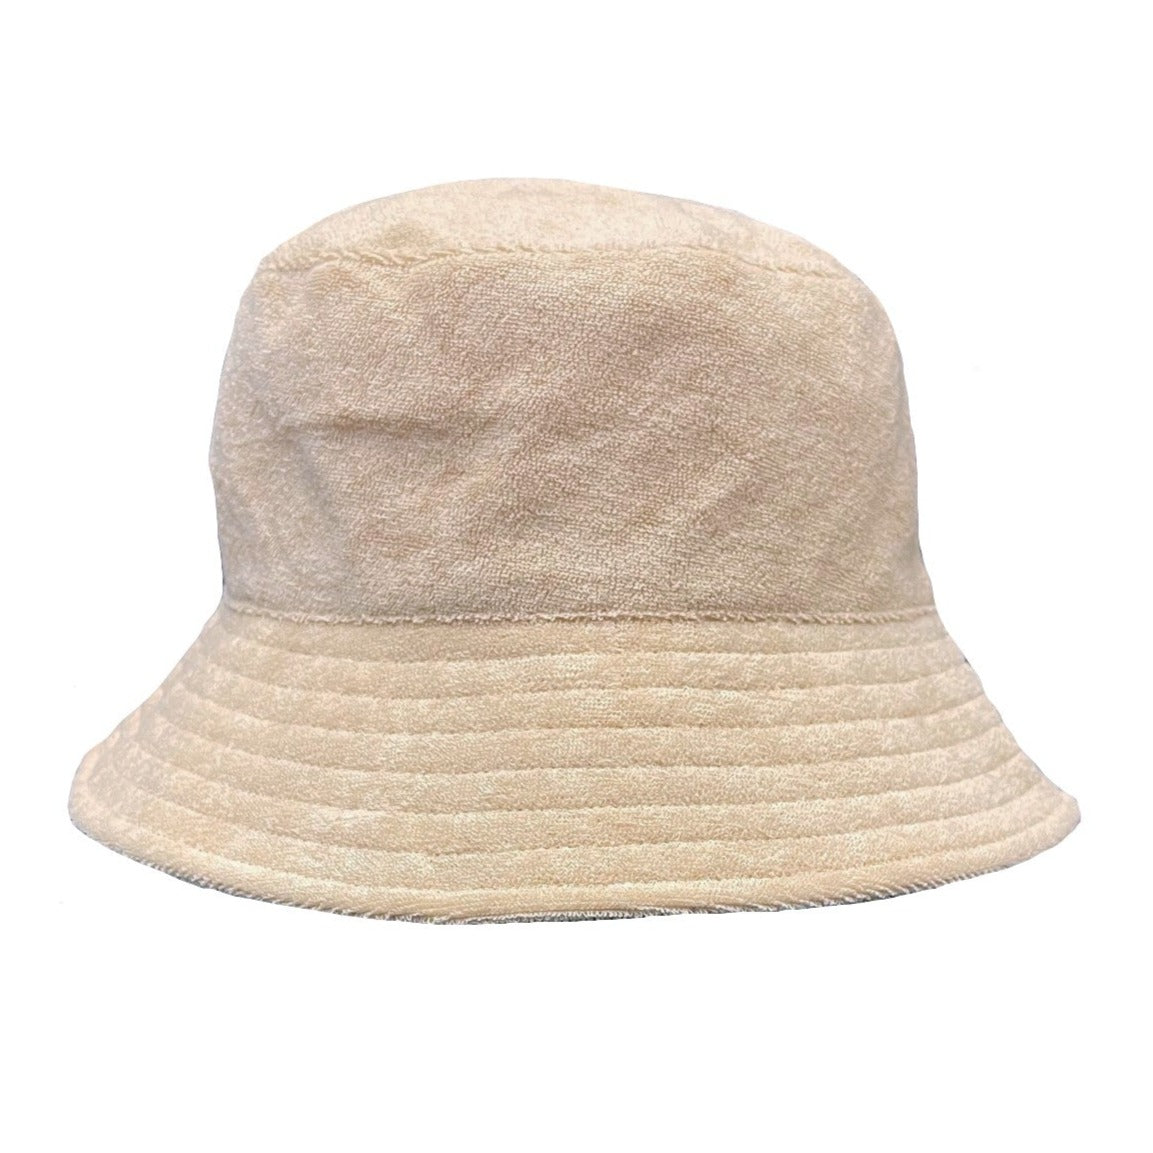 Terry Bucket Hat